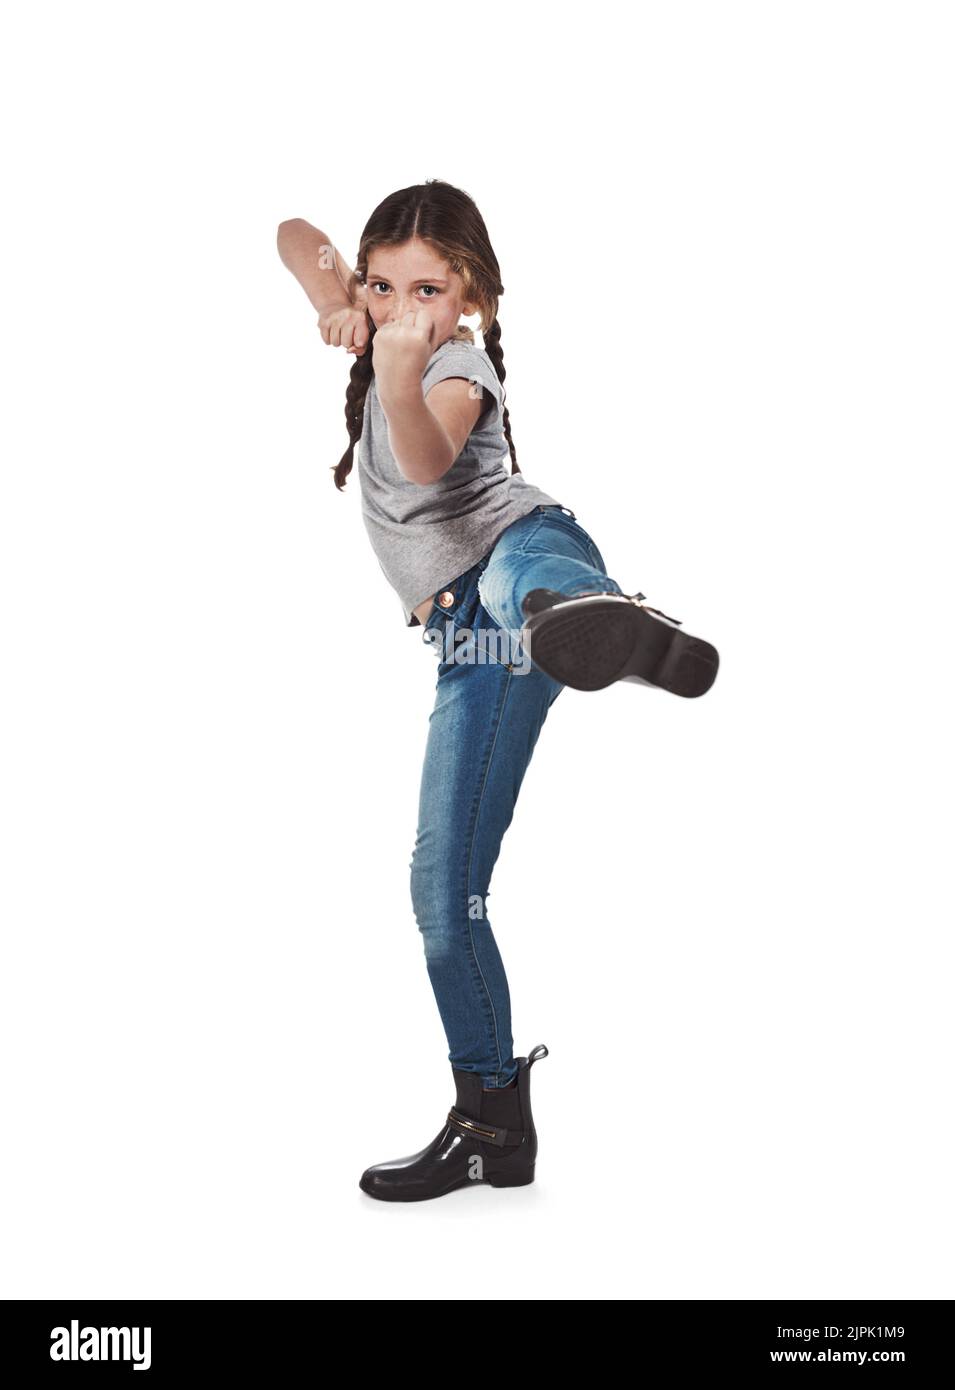 Wilder hat kein Alter. Studio-Porträt eines harten jungen Mädchens, das sich vor weißem Hintergrund verteidigt. Stockfoto